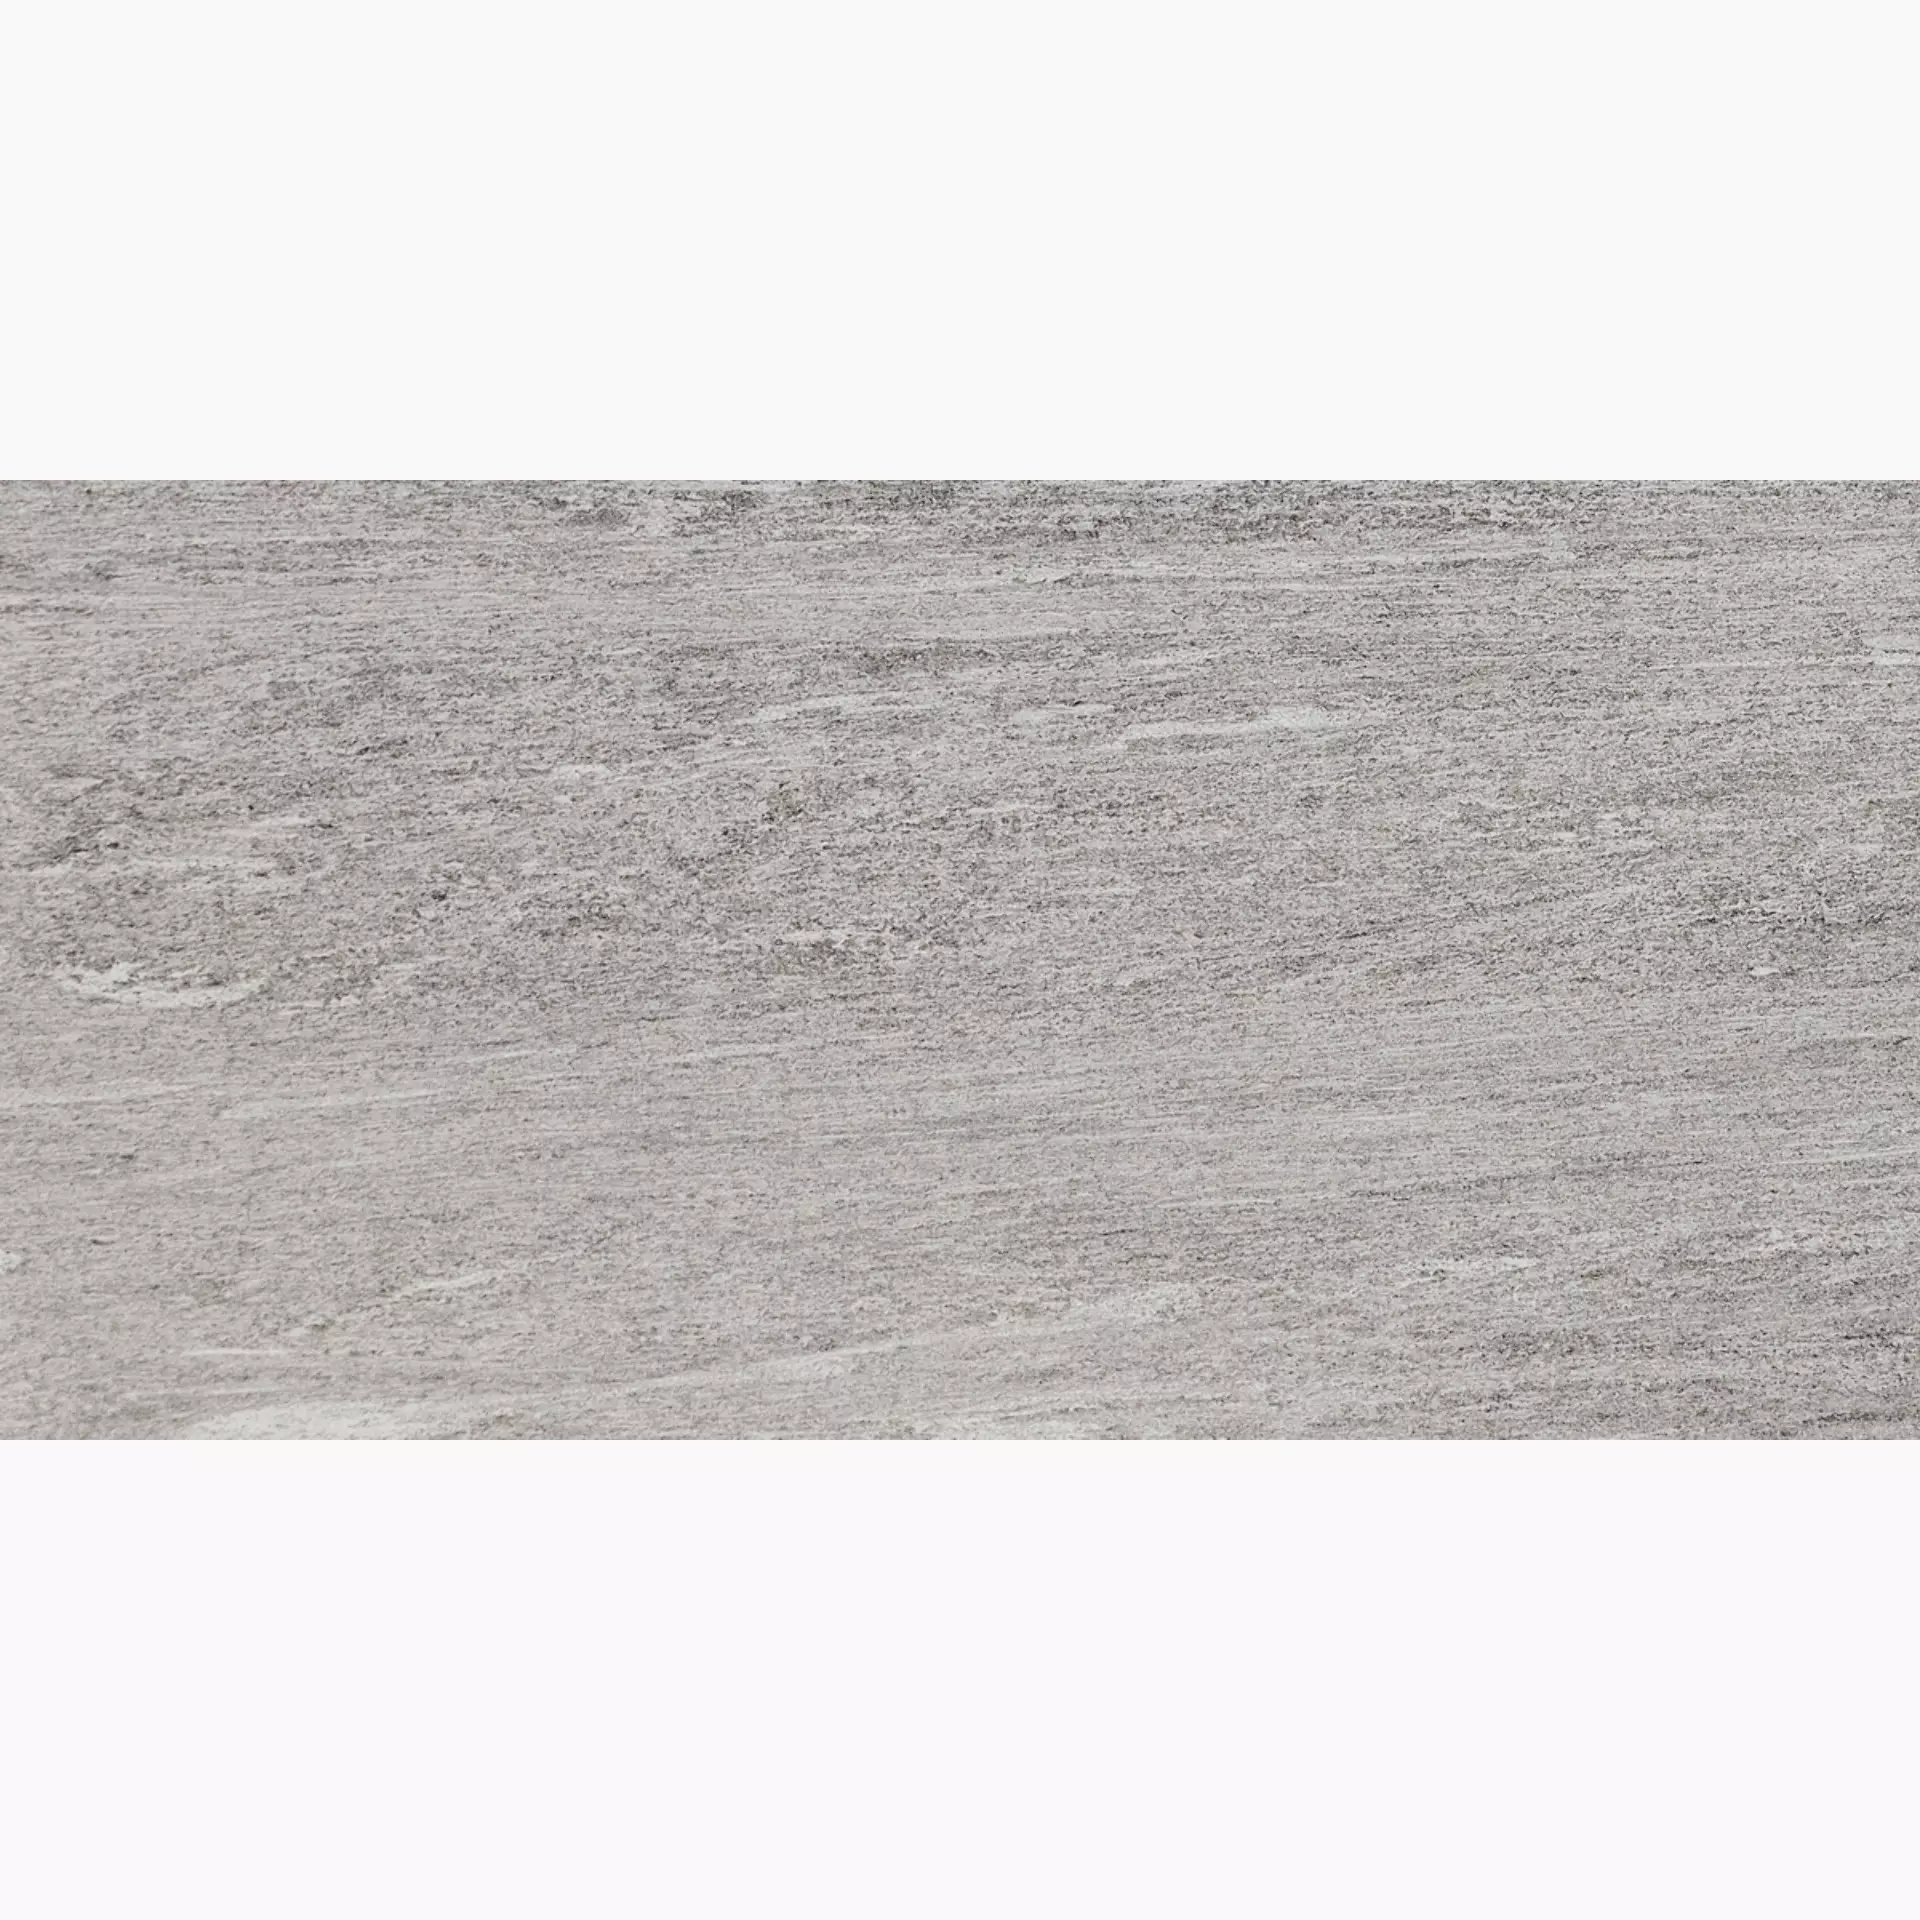 Marazzi Mystone Pietra Di Vals Greige Naturale – Matt MLCW 30x60cm rectified 10mm